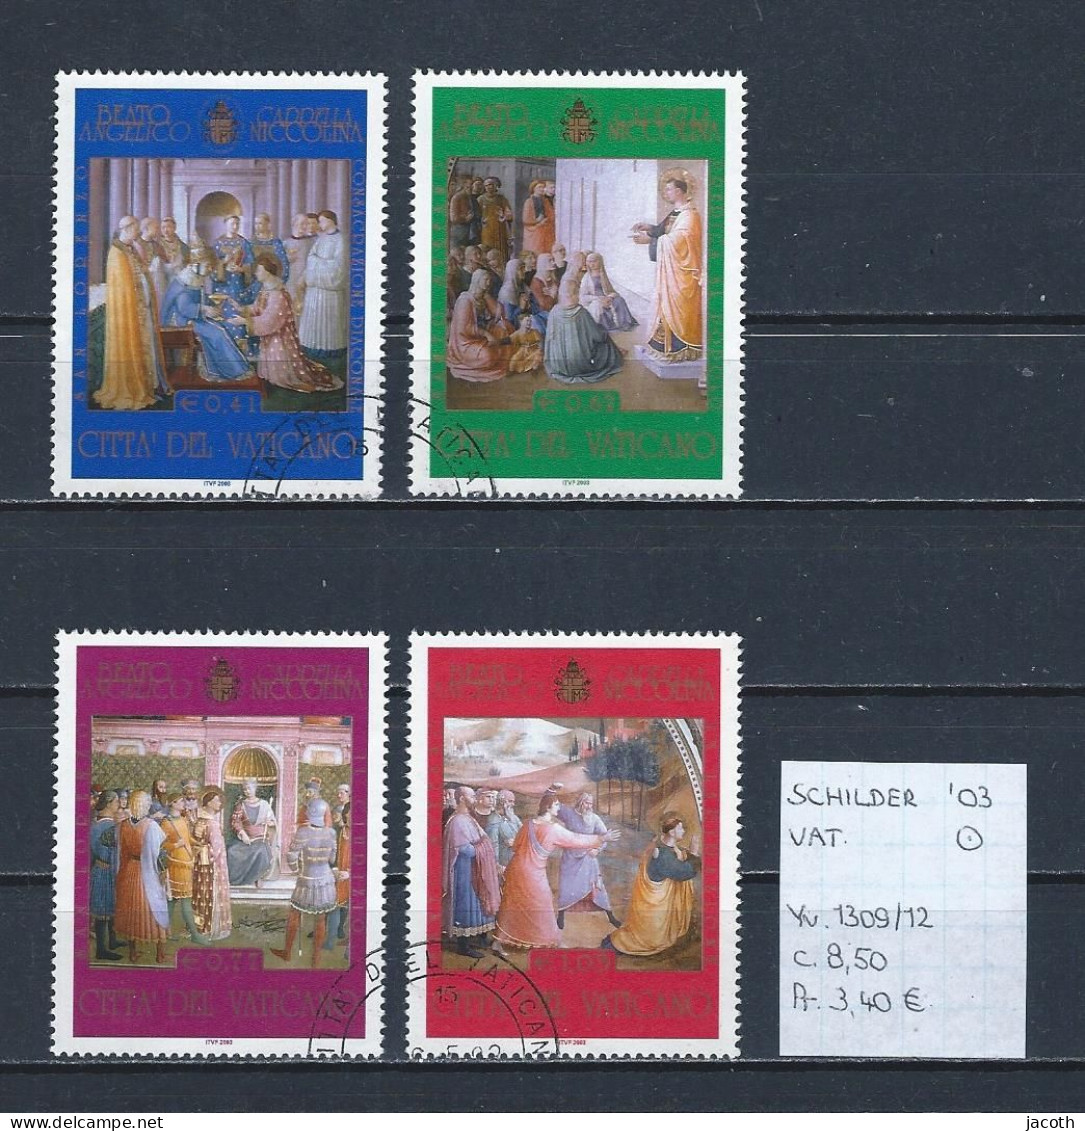 (TJ) Godsdienst - Religieuze Kunst - Vaticaan 2003 - YT 1309/12 (gest./obl./used) - Schilderijen